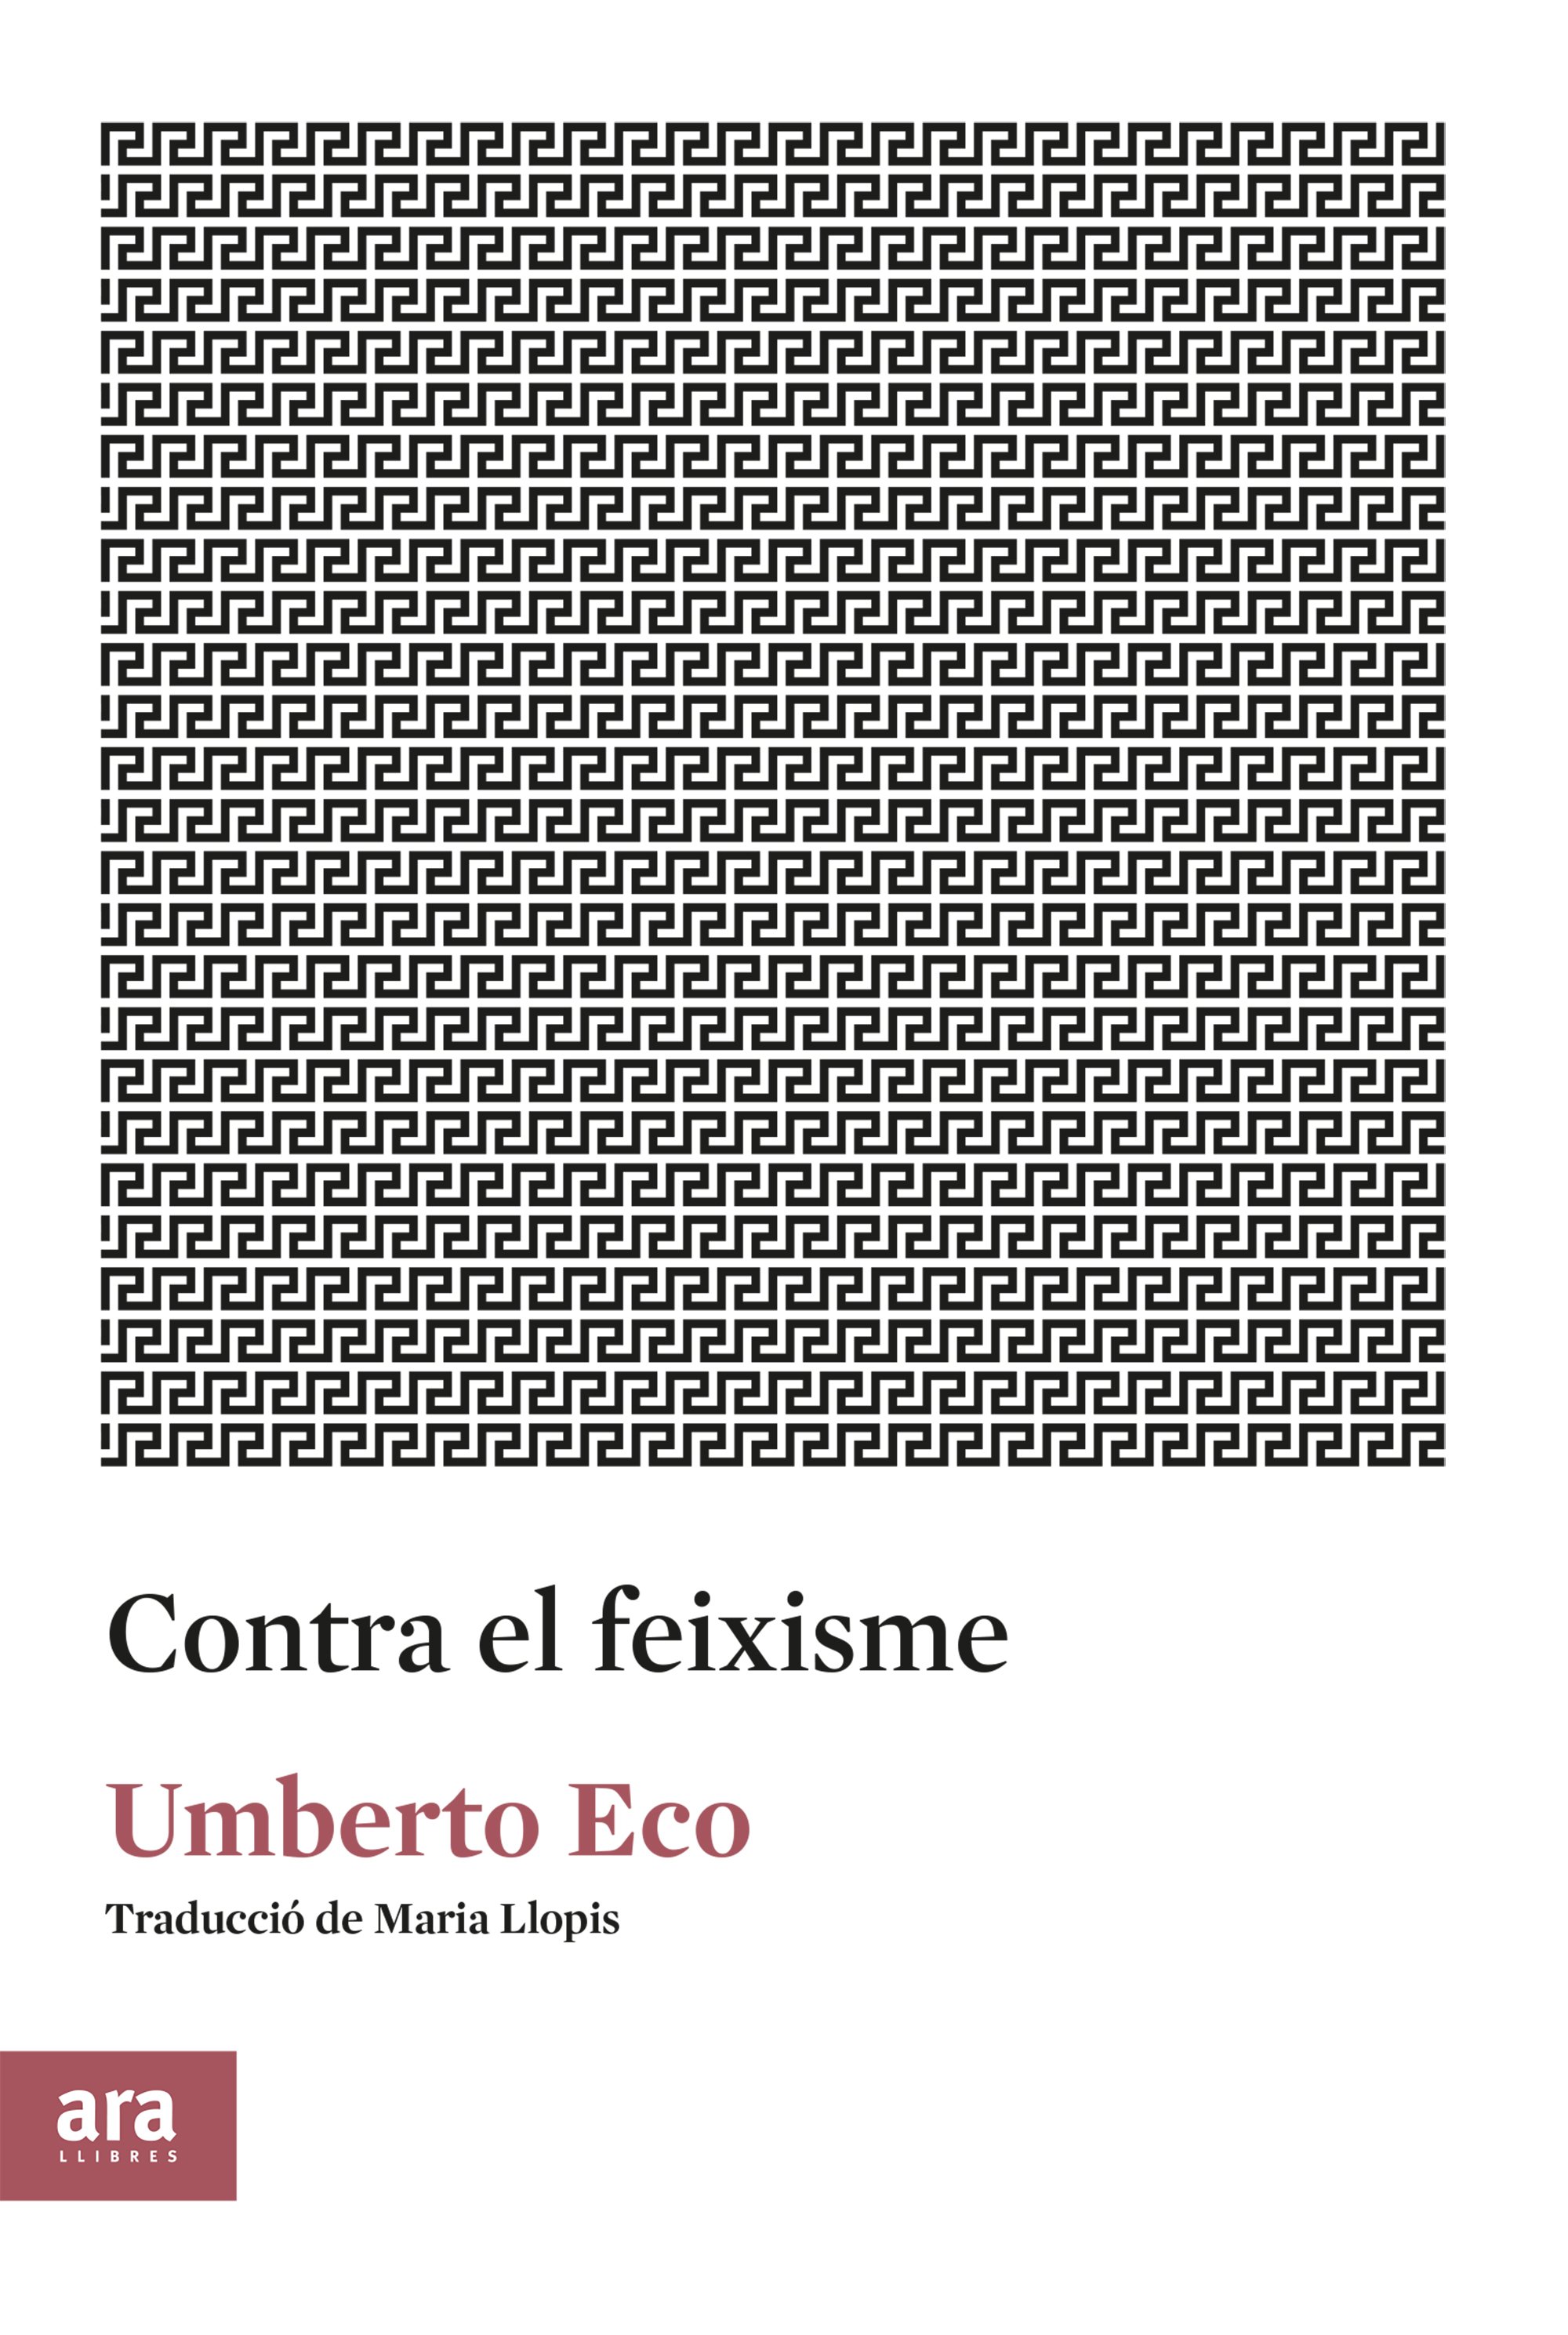 Umberto Eco, 'Contra el feixisme'. Ara Llibres, 59 p., 9,50 €.